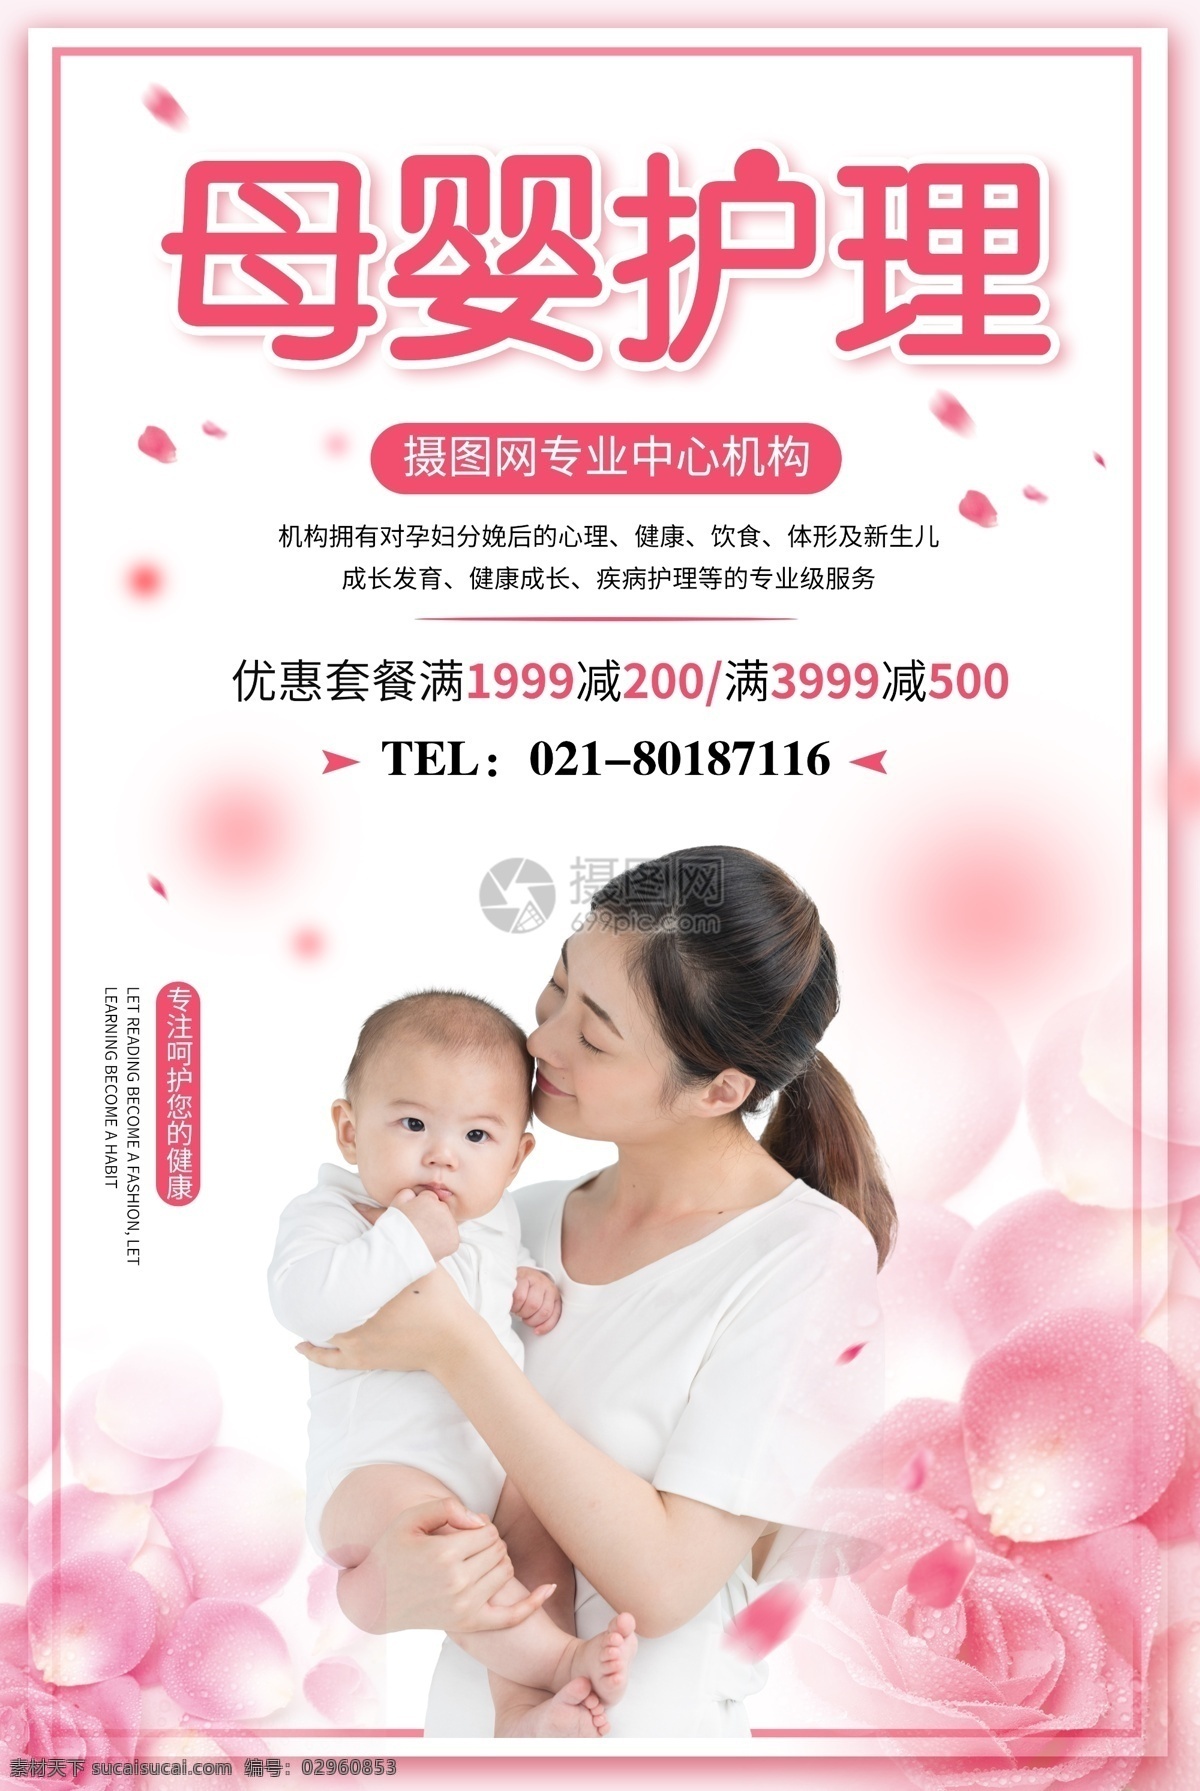 母婴护理 宣传海报 母婴 孩子 宝宝 护理 海报 母婴用品 月子中心 婴儿护理 儿童护理